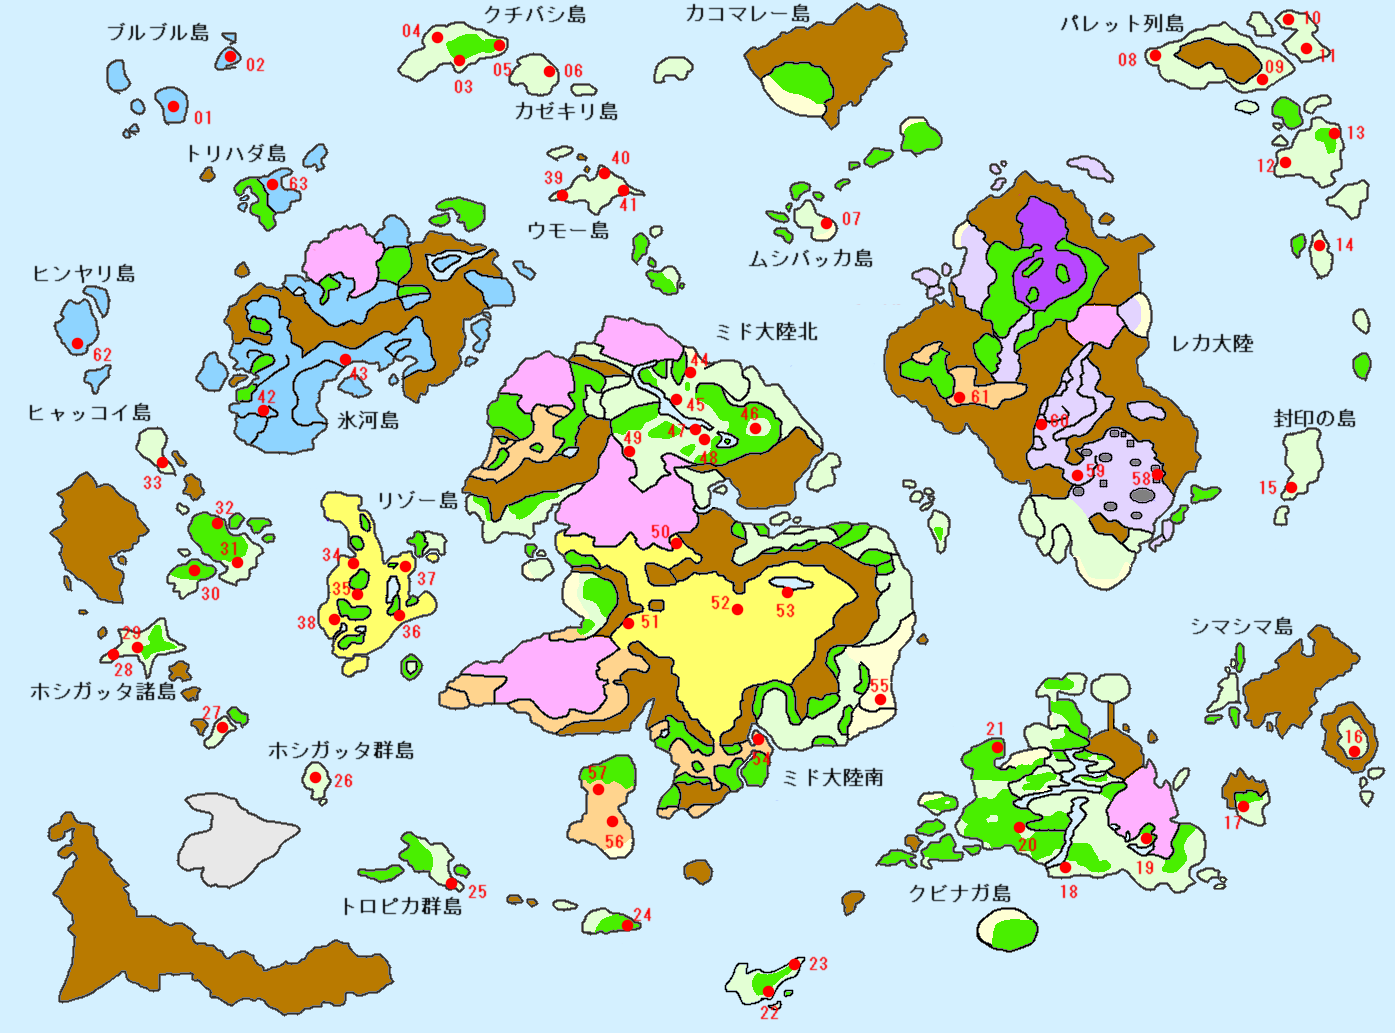 二ノ国 漆黒の魔導士 MAP付き攻略ページ 採取ポイントマップ 【ニノ国】: ダラダラGAME生活